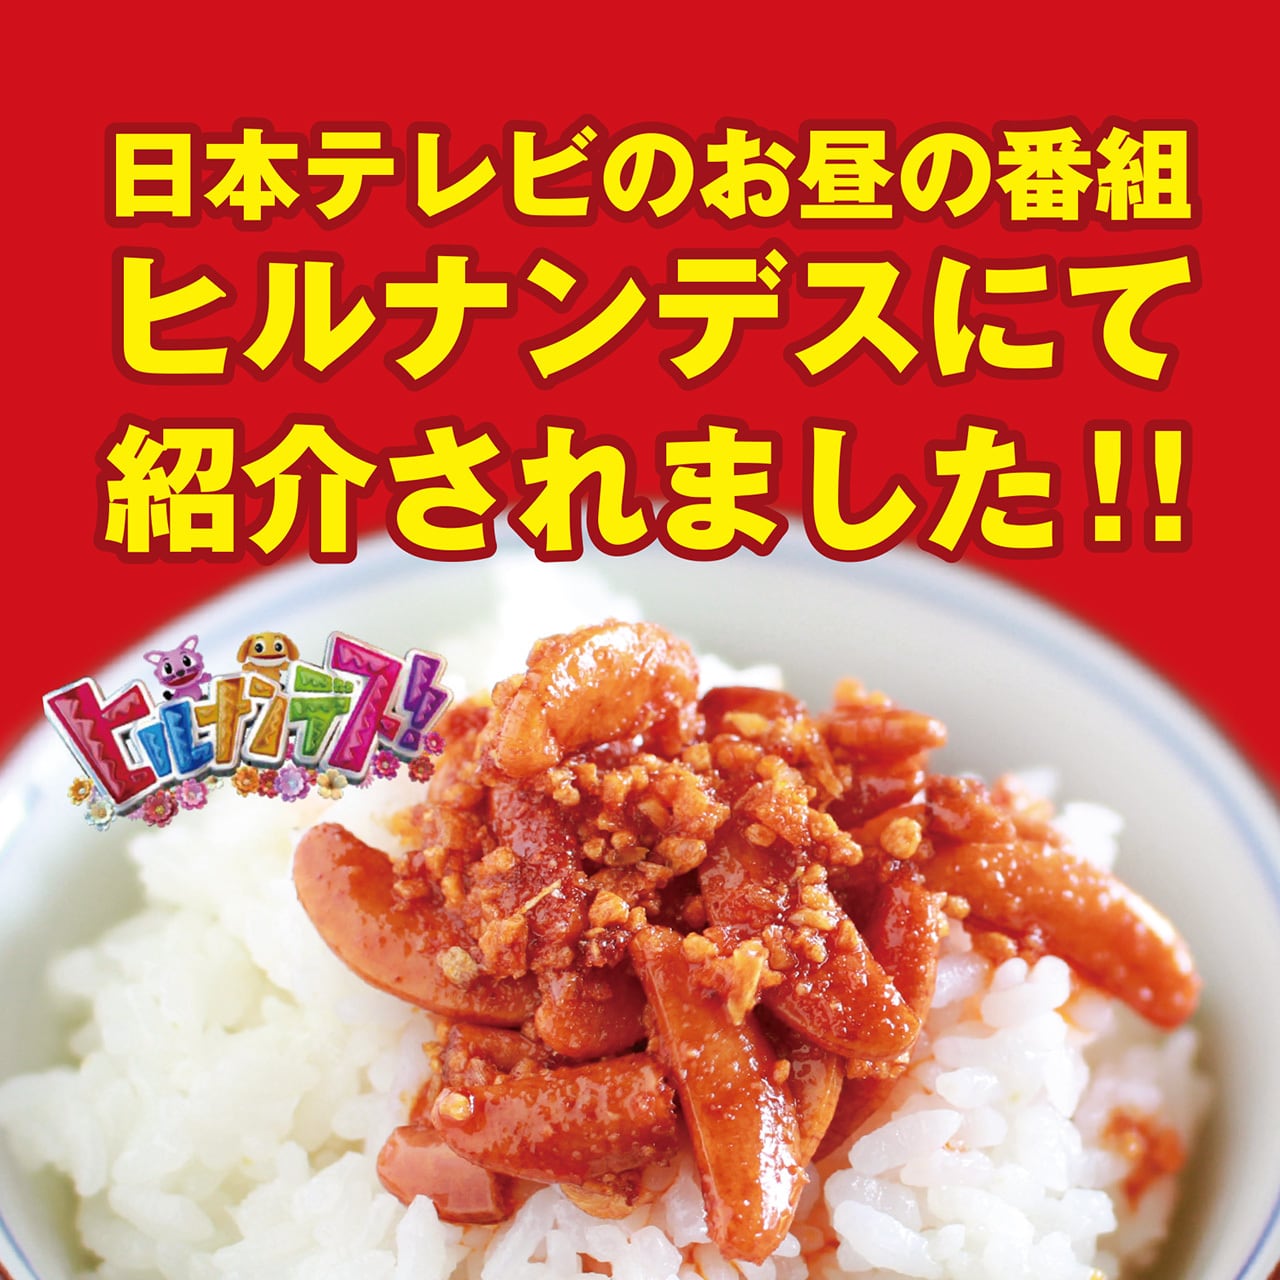 食べるラー油と柿の種　160g×2本　瓶入り北海道・四国・九州行きは追加送料220円かかります。マルシンフーズ